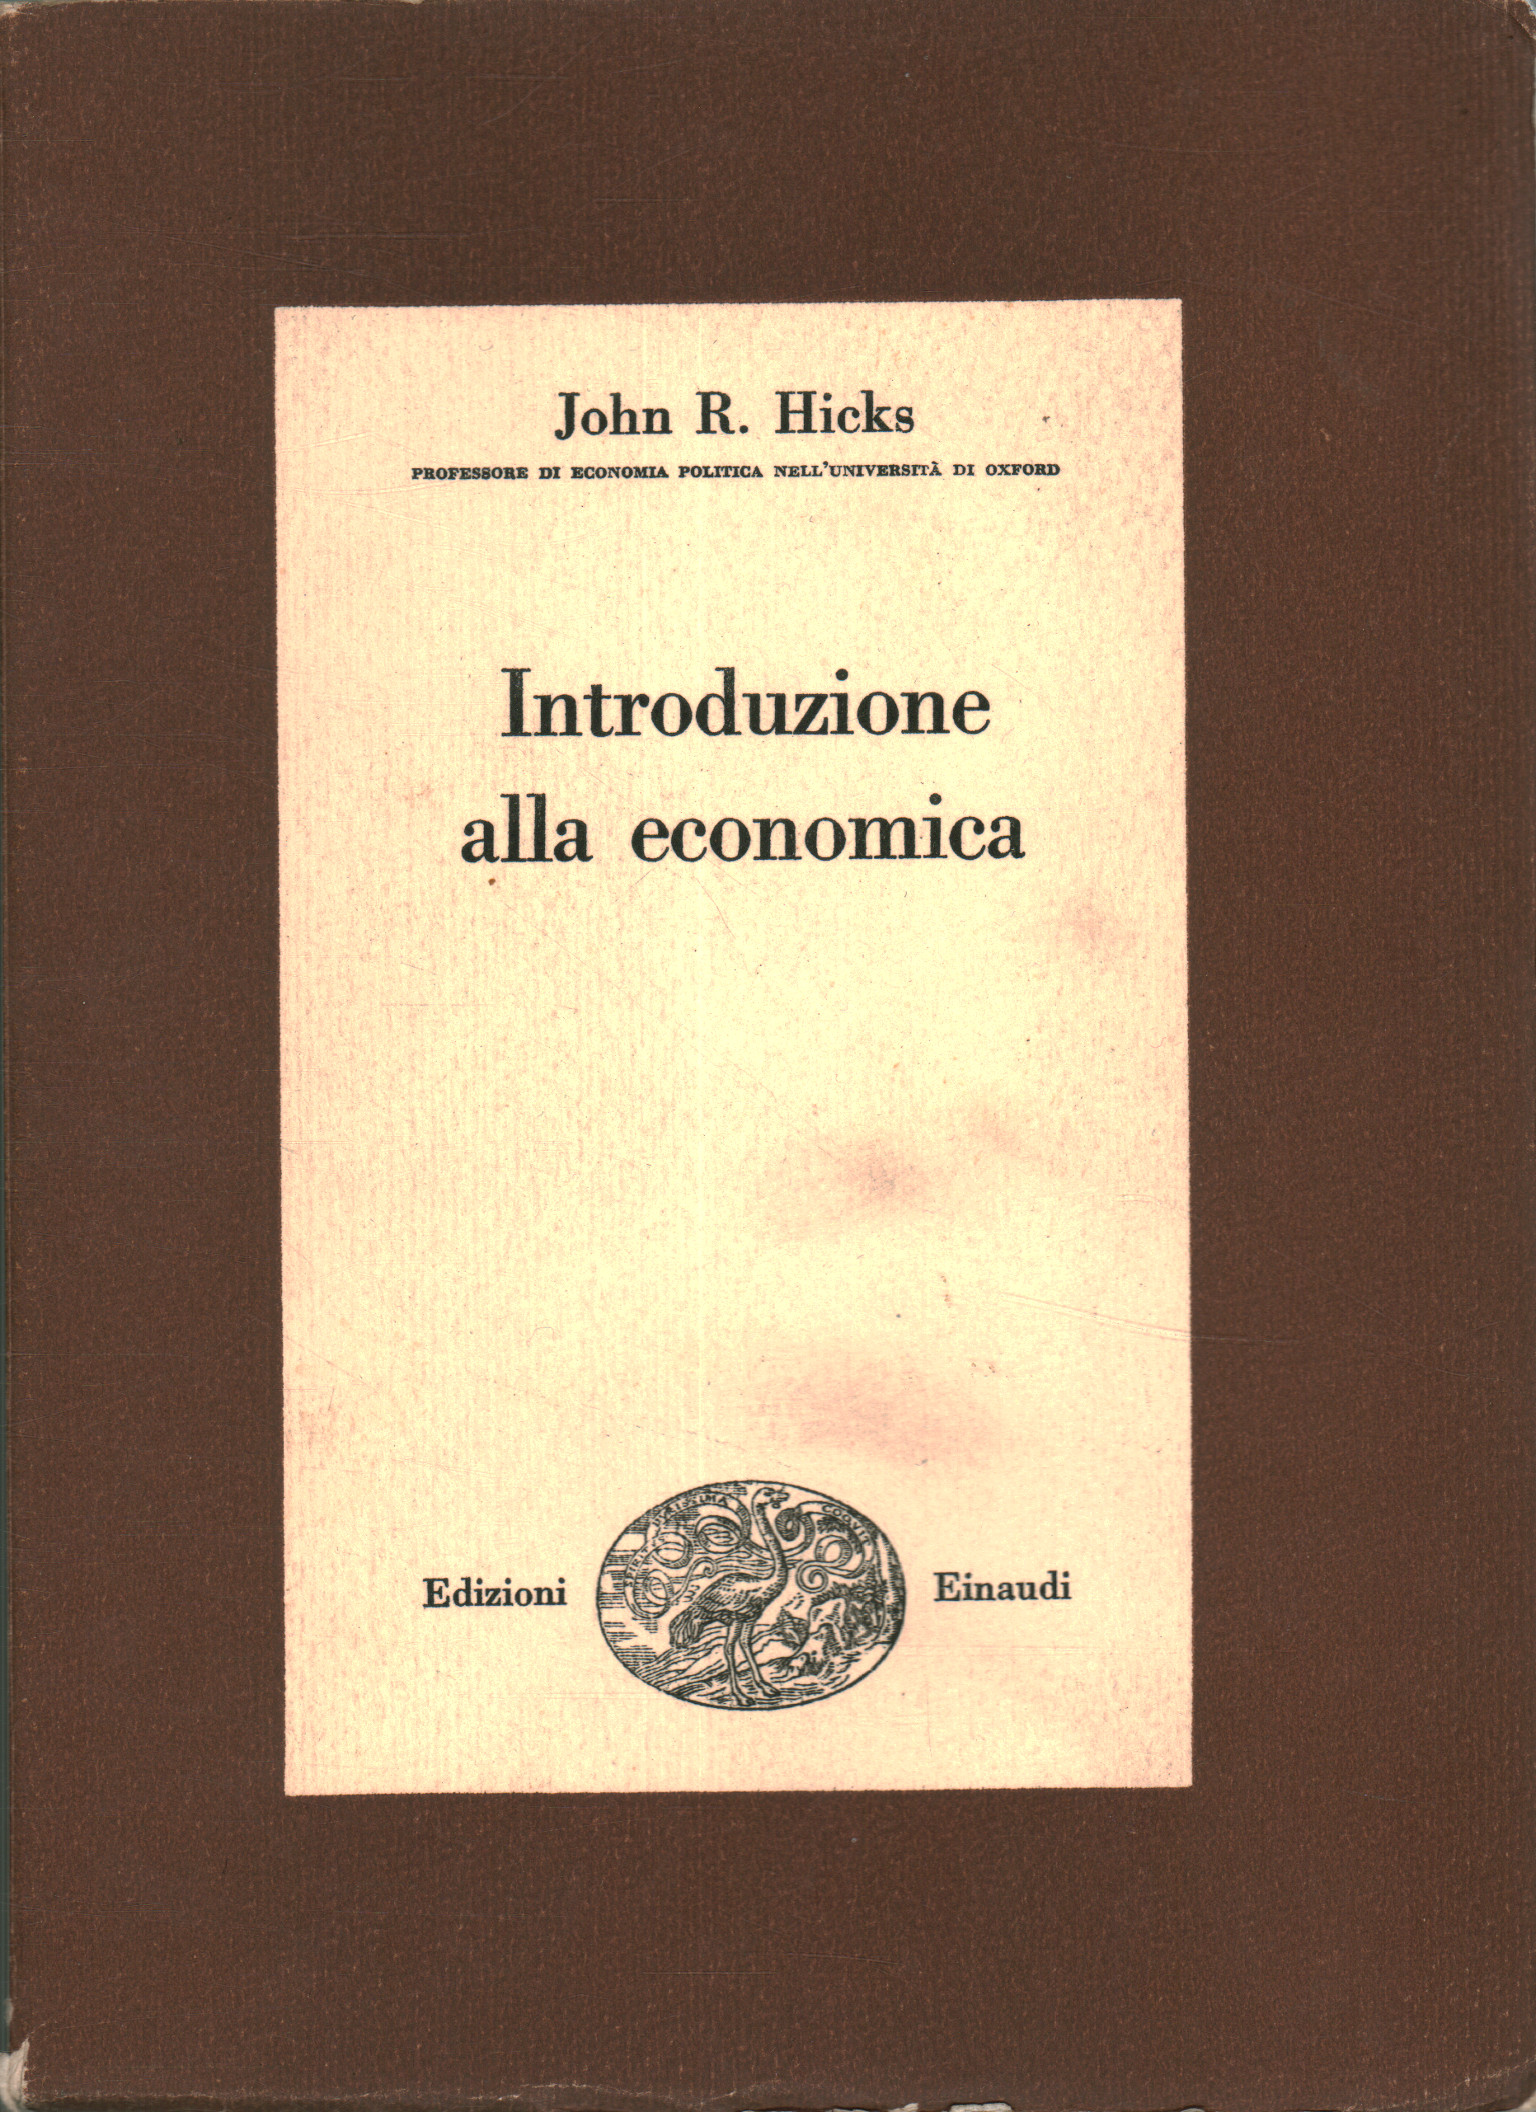 Introduzione alla economica, John Richard Hicks